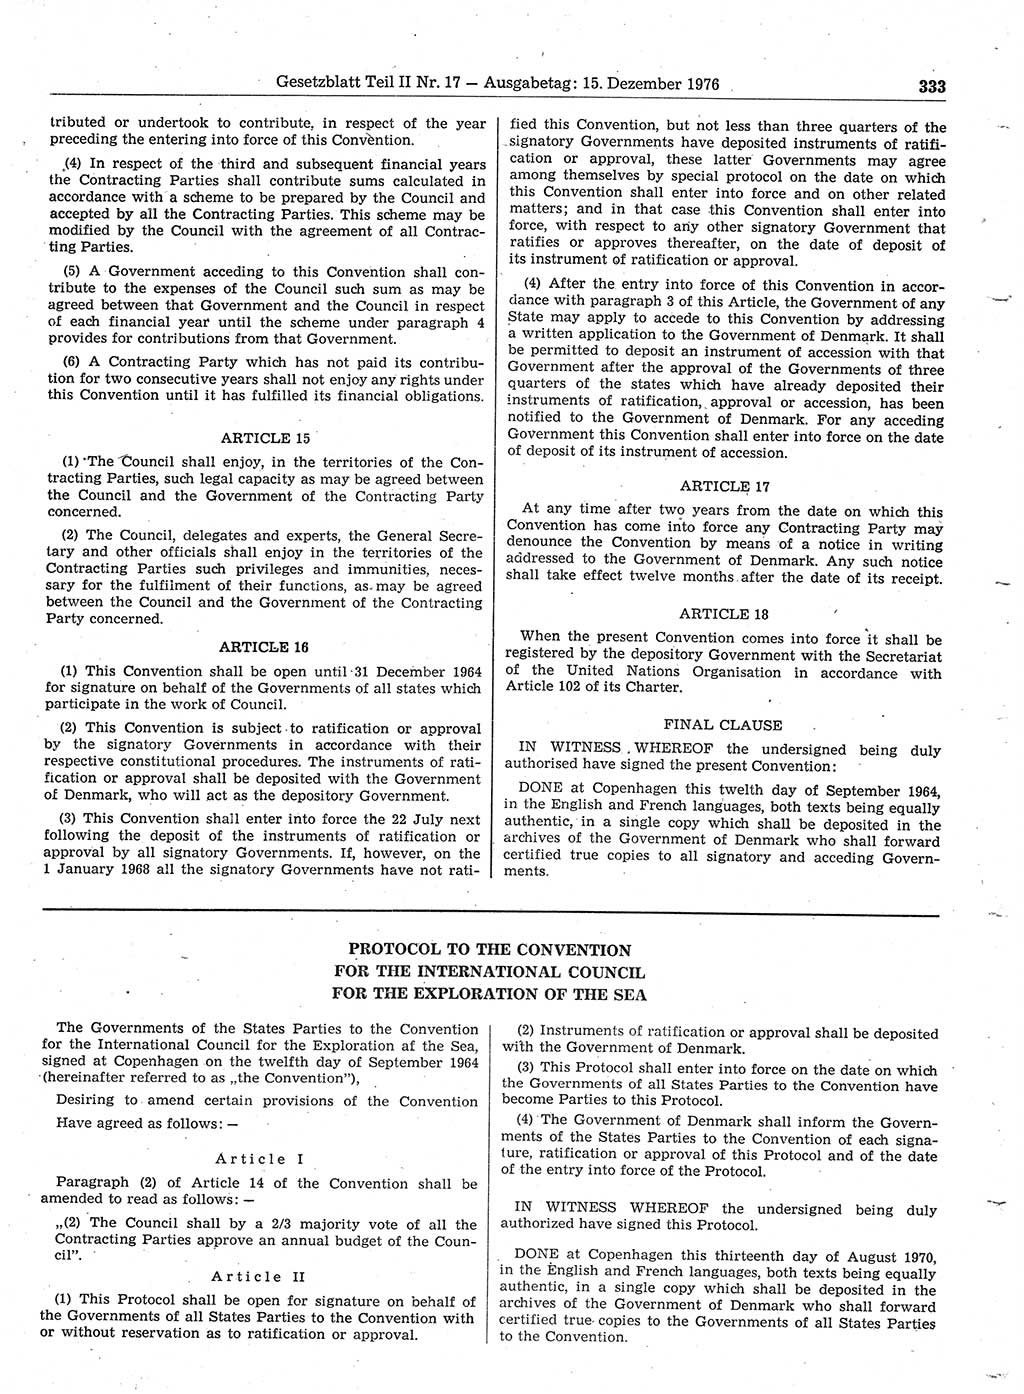 Gesetzblatt (GBl.) der Deutschen Demokratischen Republik (DDR) Teil ⅠⅠ 1976, Seite 333 (GBl. DDR ⅠⅠ 1976, S. 333)